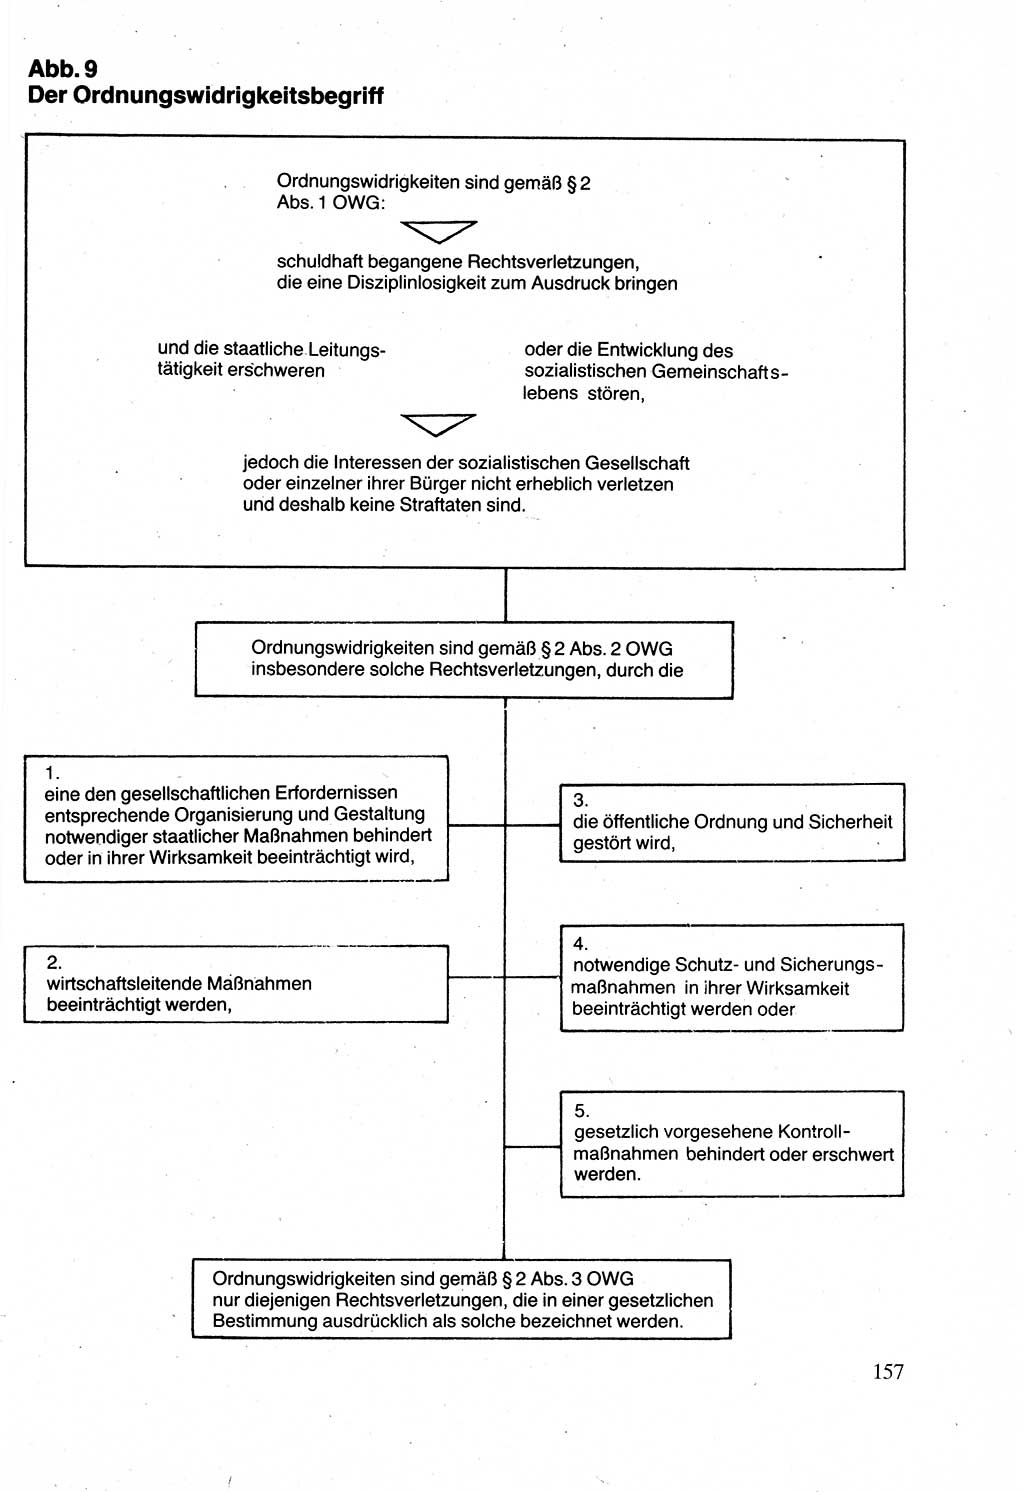 Verwaltungsrecht [Deutsche Demokratische Republik (DDR)], Lehrbuch 1988, Seite 157 (Verw.-R. DDR Lb. 1988, S. 157)